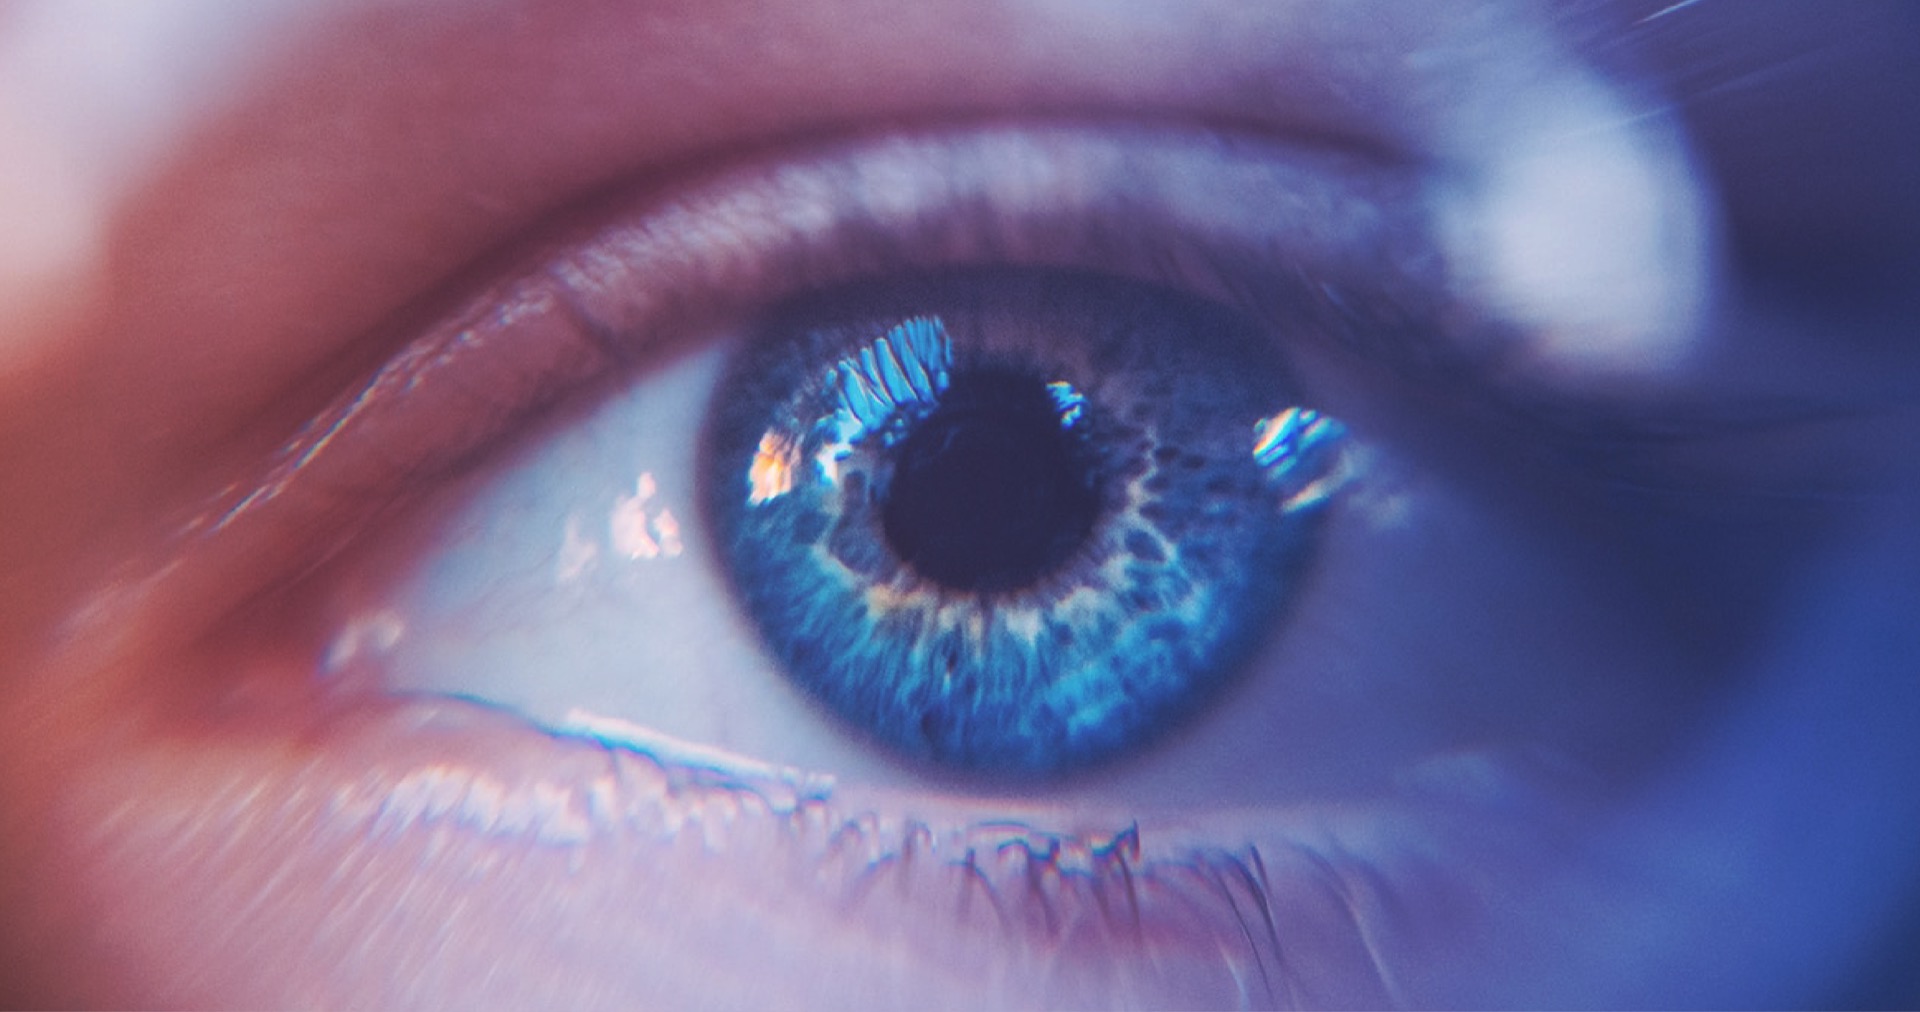 Έρχεται ο βιονικός φακός που προσφέρει υπεράνθρωπη όραση